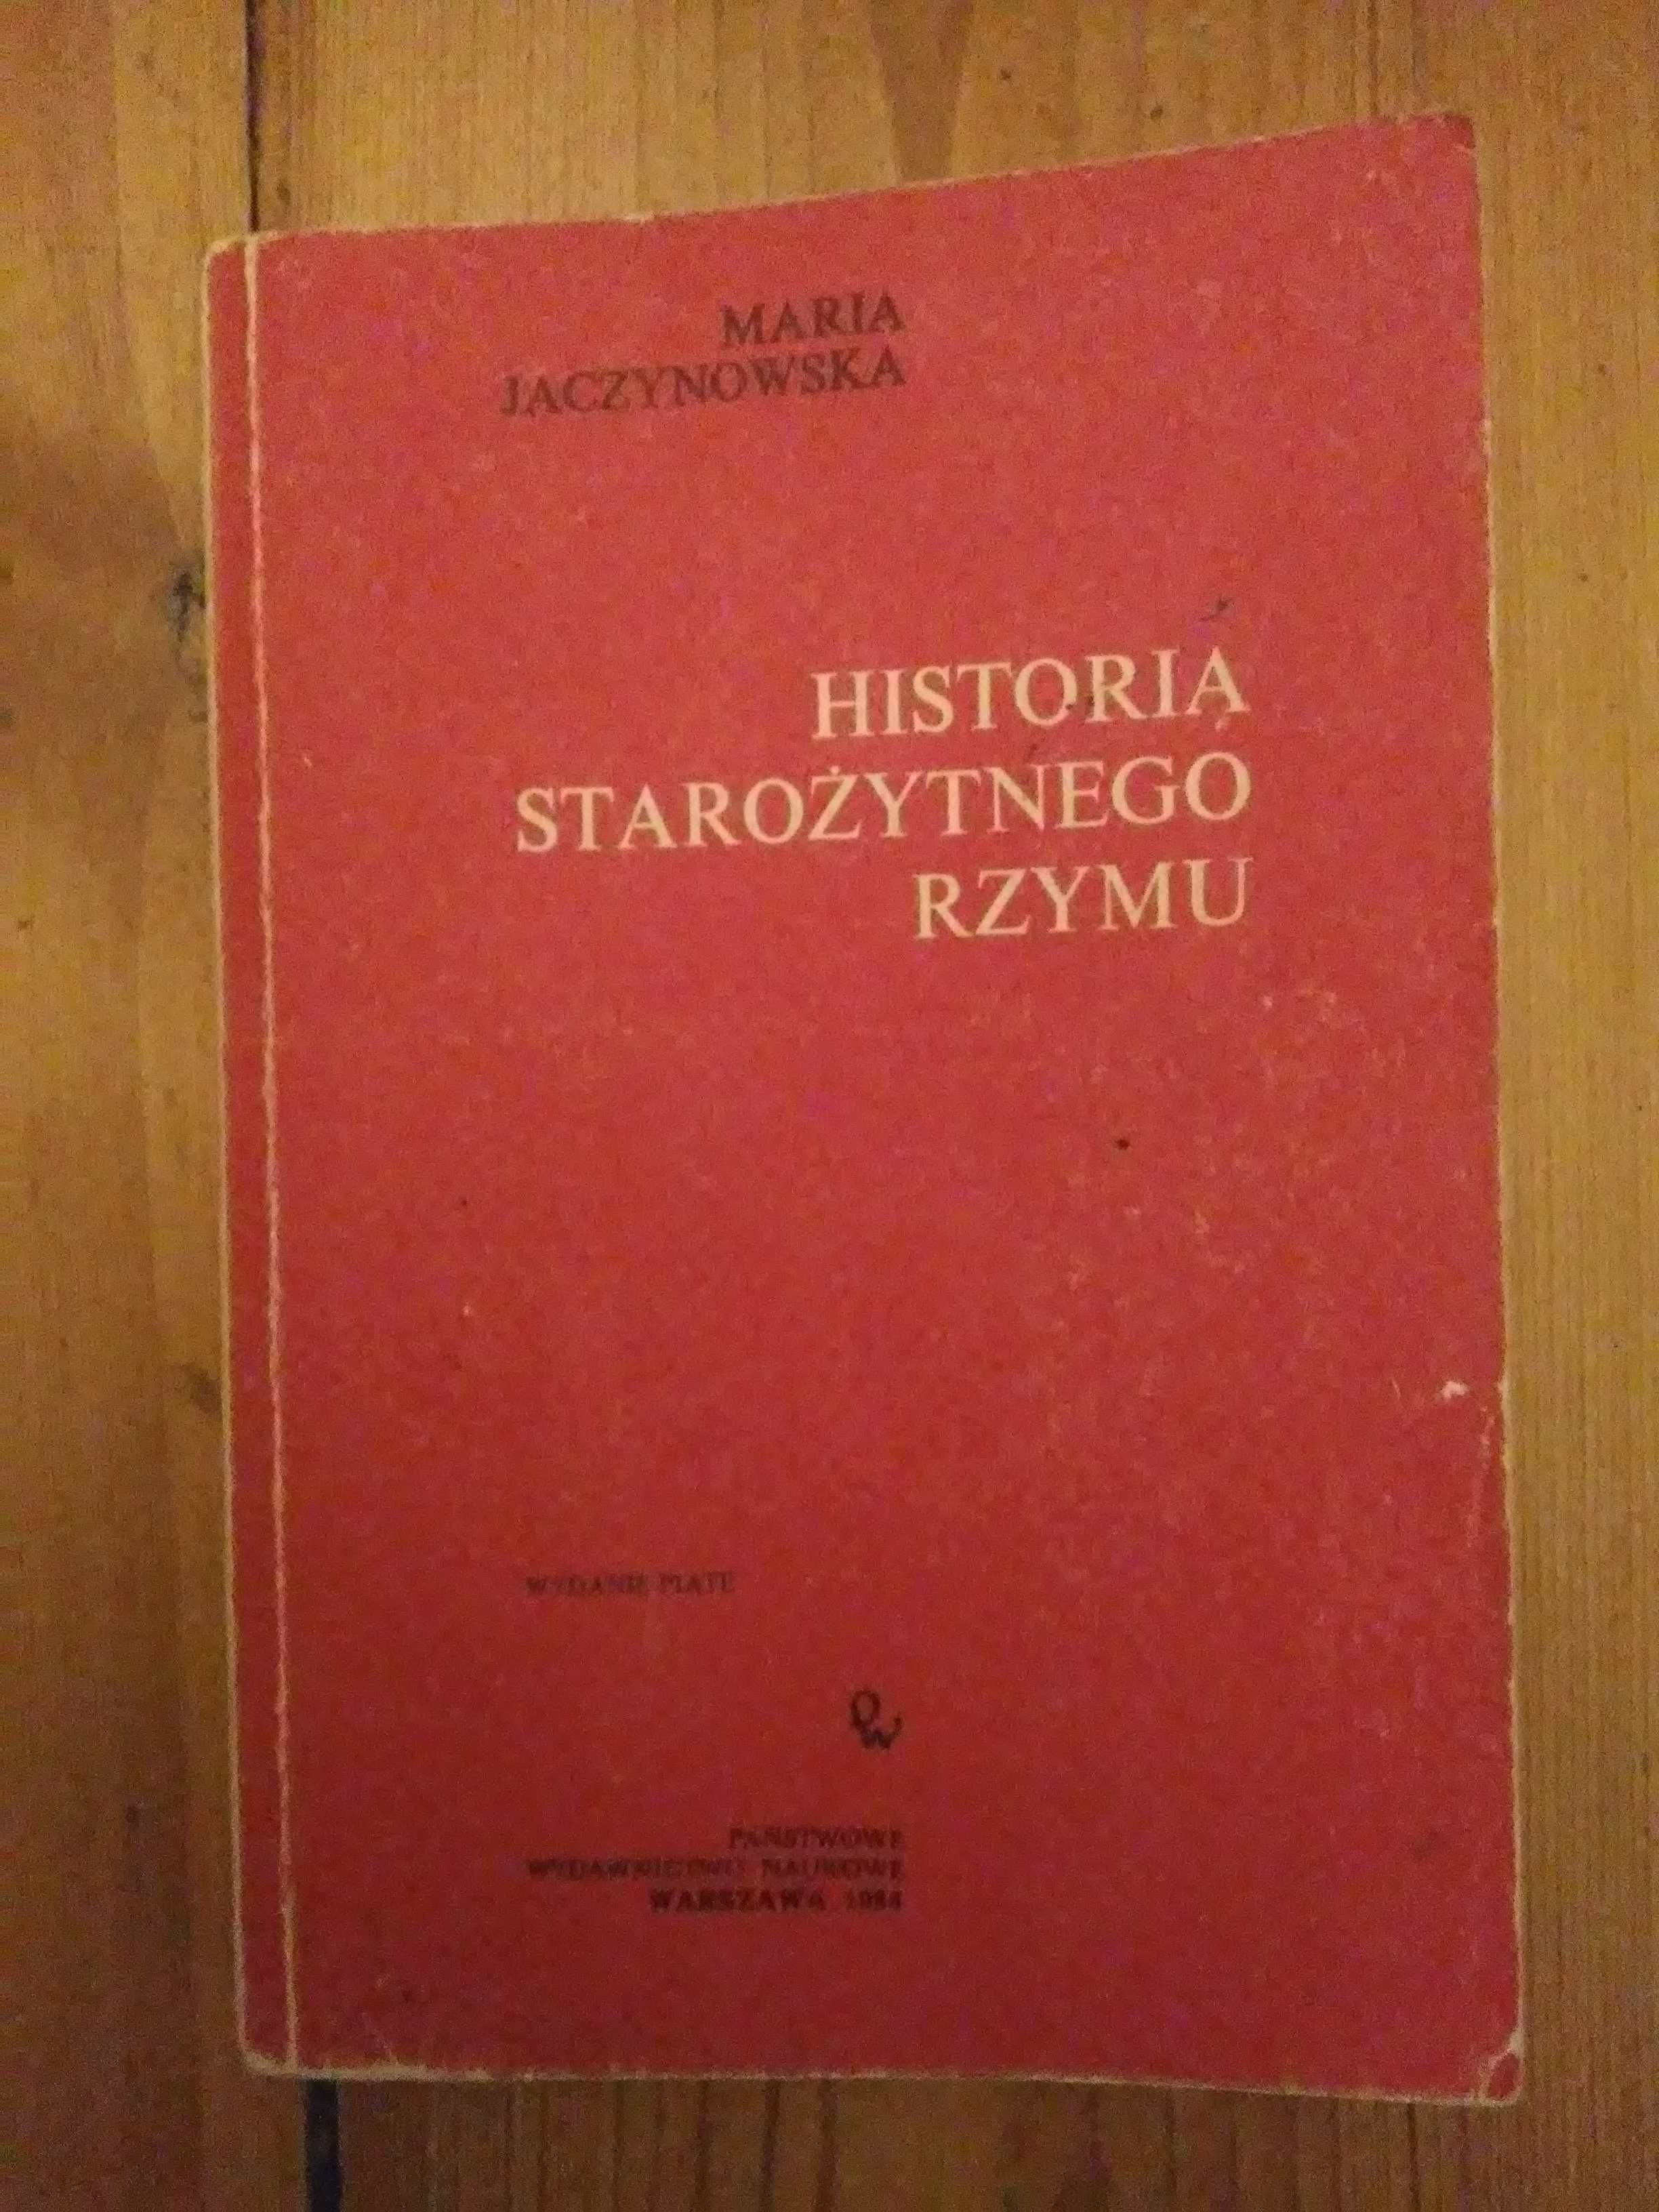 Maria Jaczynowska, Historia starożytnego Rzymu